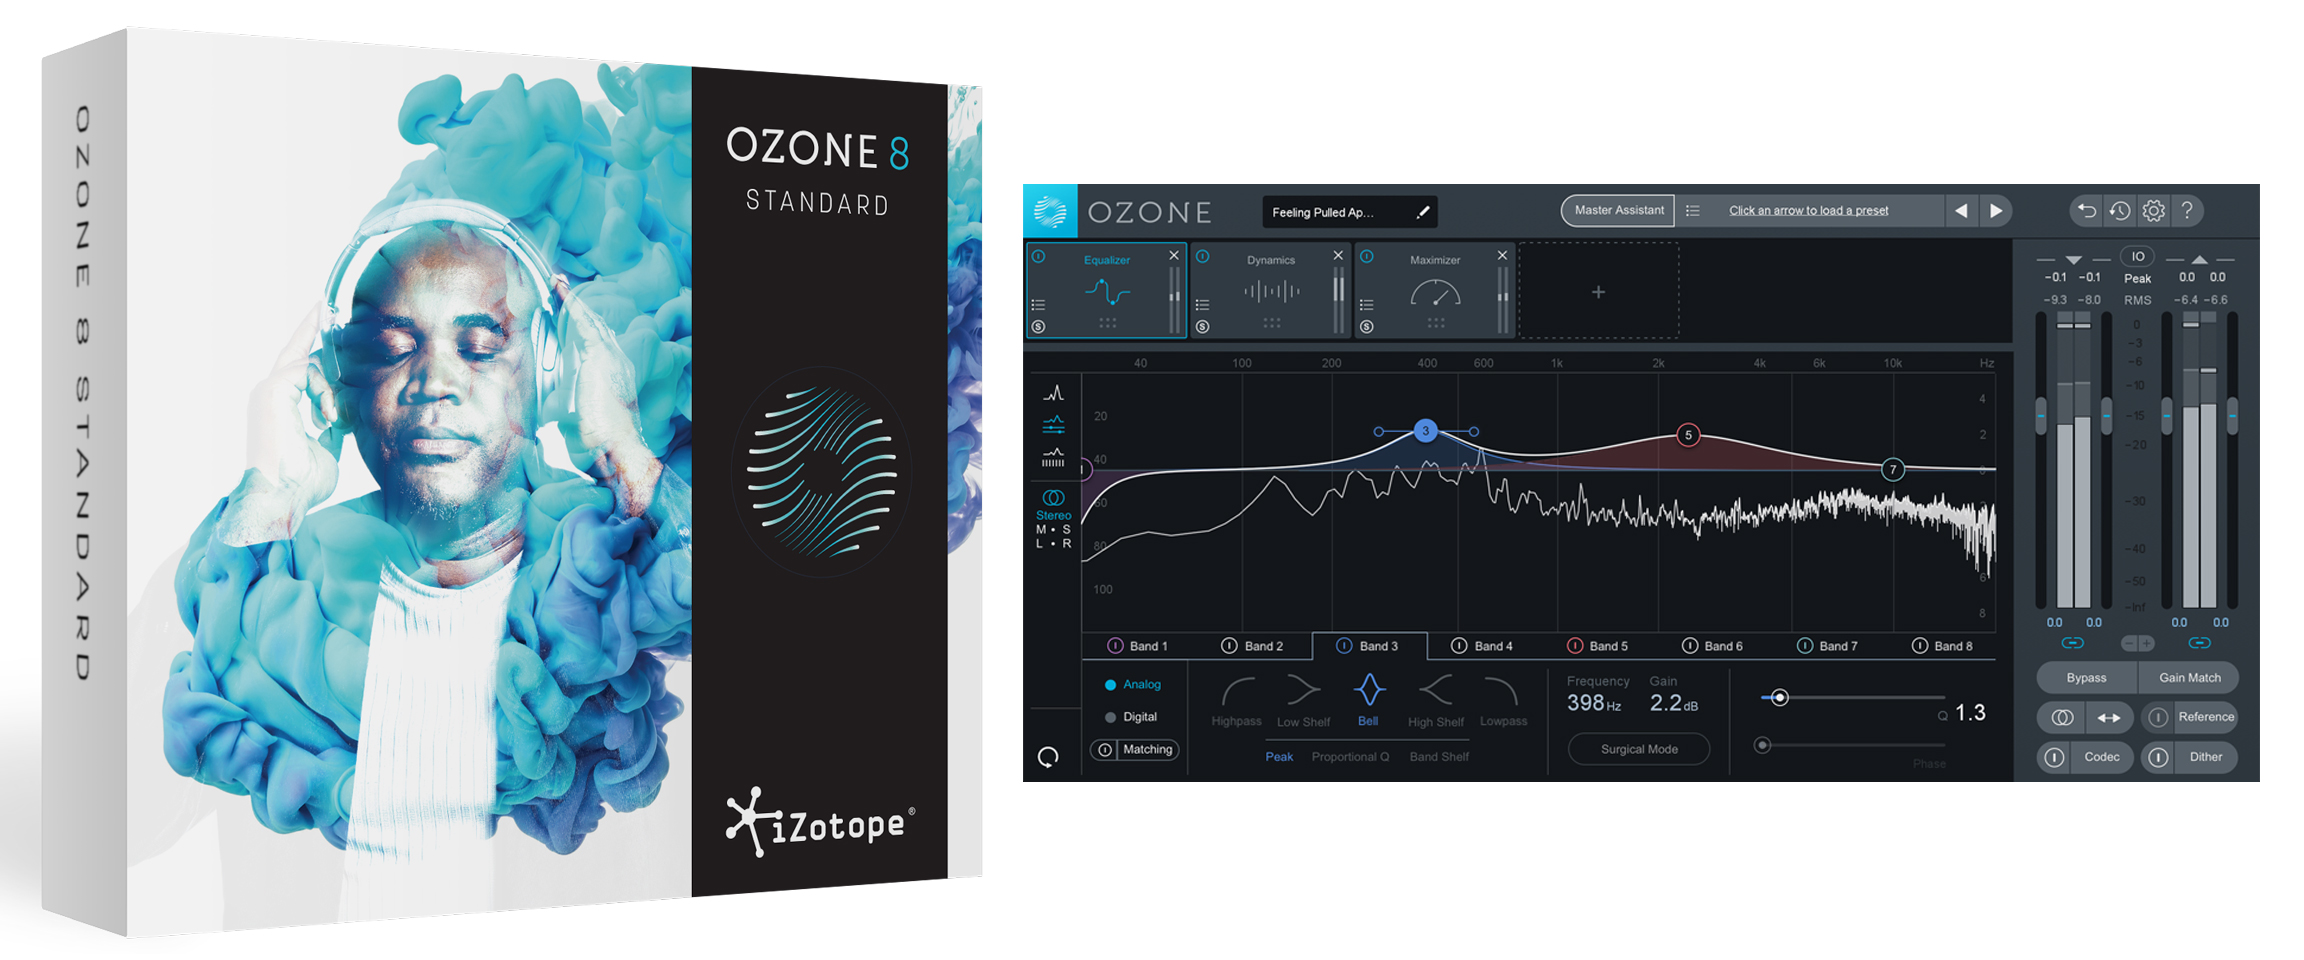 ozone-8-screen